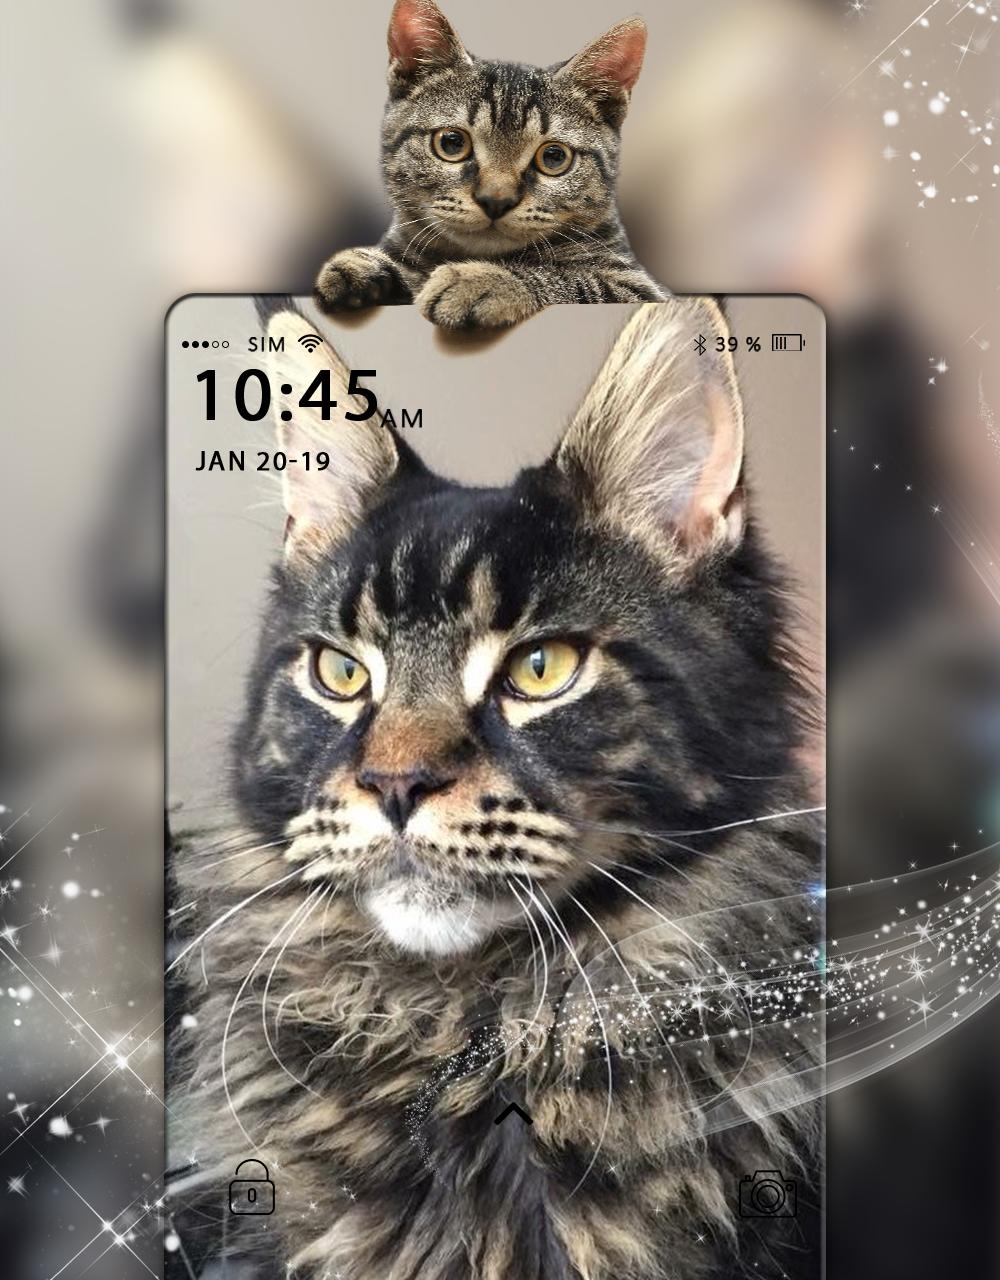 Hình nền con mèo 3d với những hình ảnh đặc sắc sẽ khiến cho bạn không thể rời mắt khỏi màn hình. Từ cử chỉ tinh tế đến khung cảnh đẹp, chú mèo sẽ khiến bạn cảm thấy như đang sống trong một thế giới thần tiên. Đừng bỏ lỡ cơ hội để làm mới màn hình của bạn với hình nền con mèo 3d đẹp mắt này!